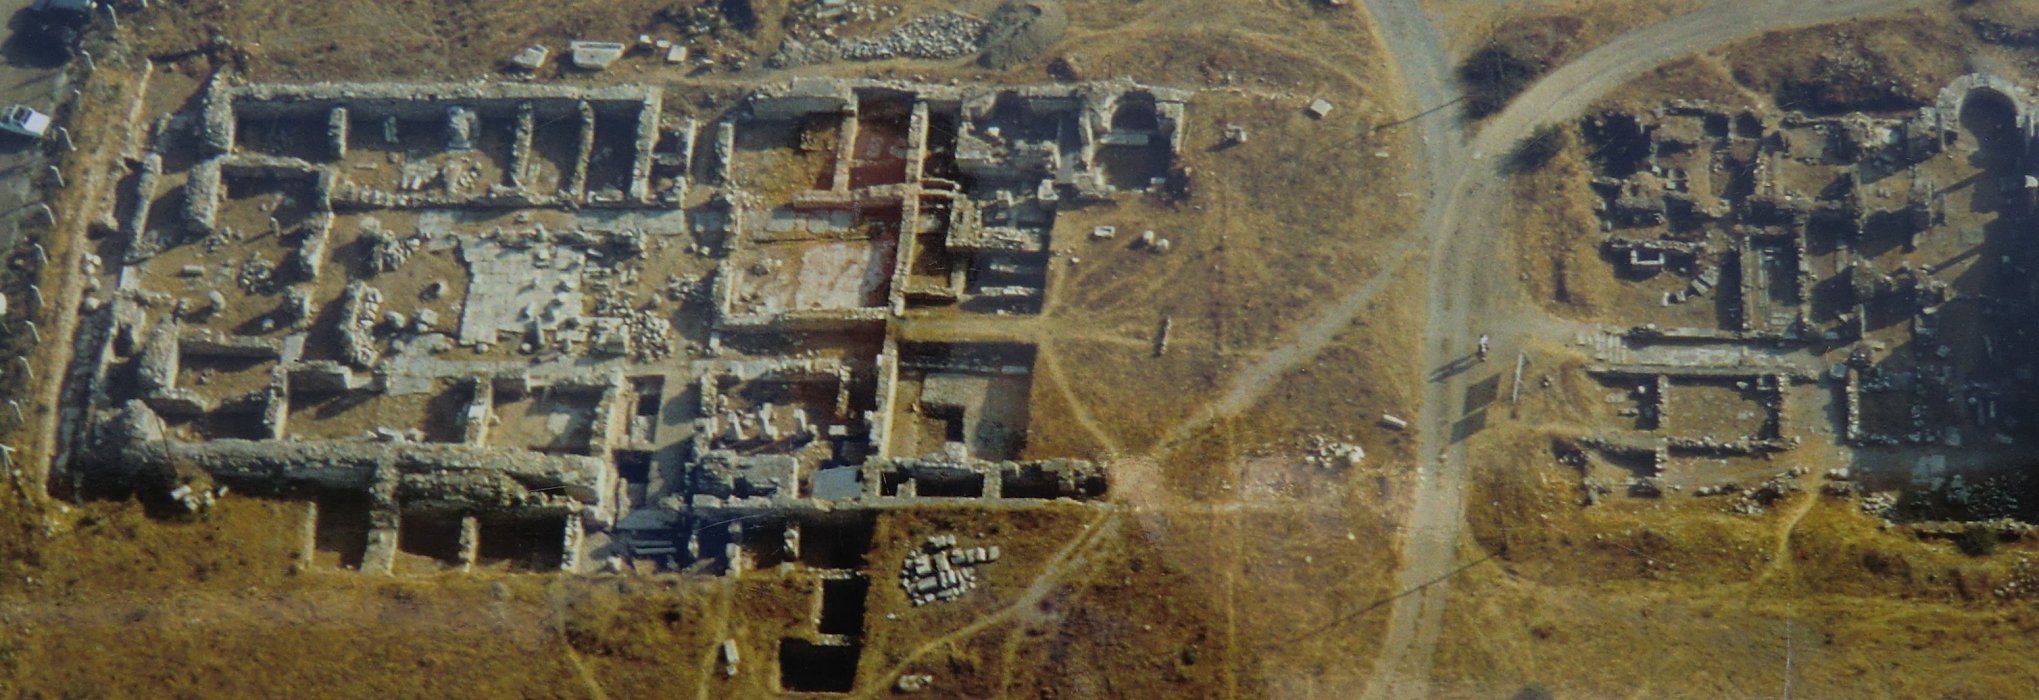 Luftbild der Ruinen des Bischofspalastes (links) neben dem östlichen Teil der Marienkirche (rechts)